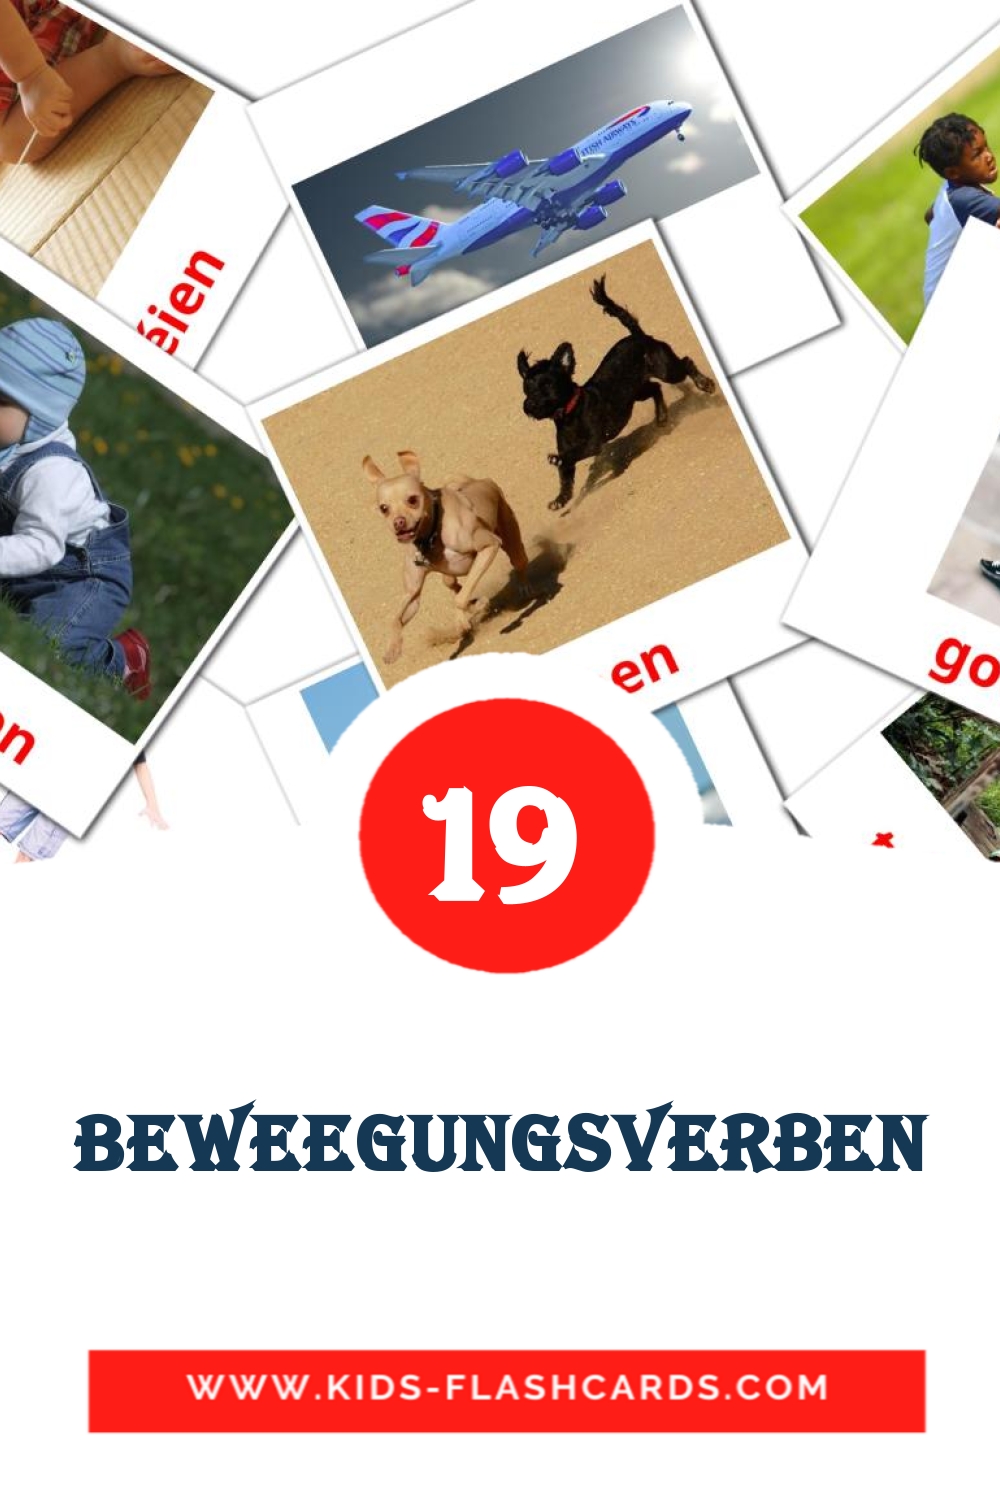 19 tarjetas didacticas de Beweegungsverben para el jardín de infancia en luxemburgués